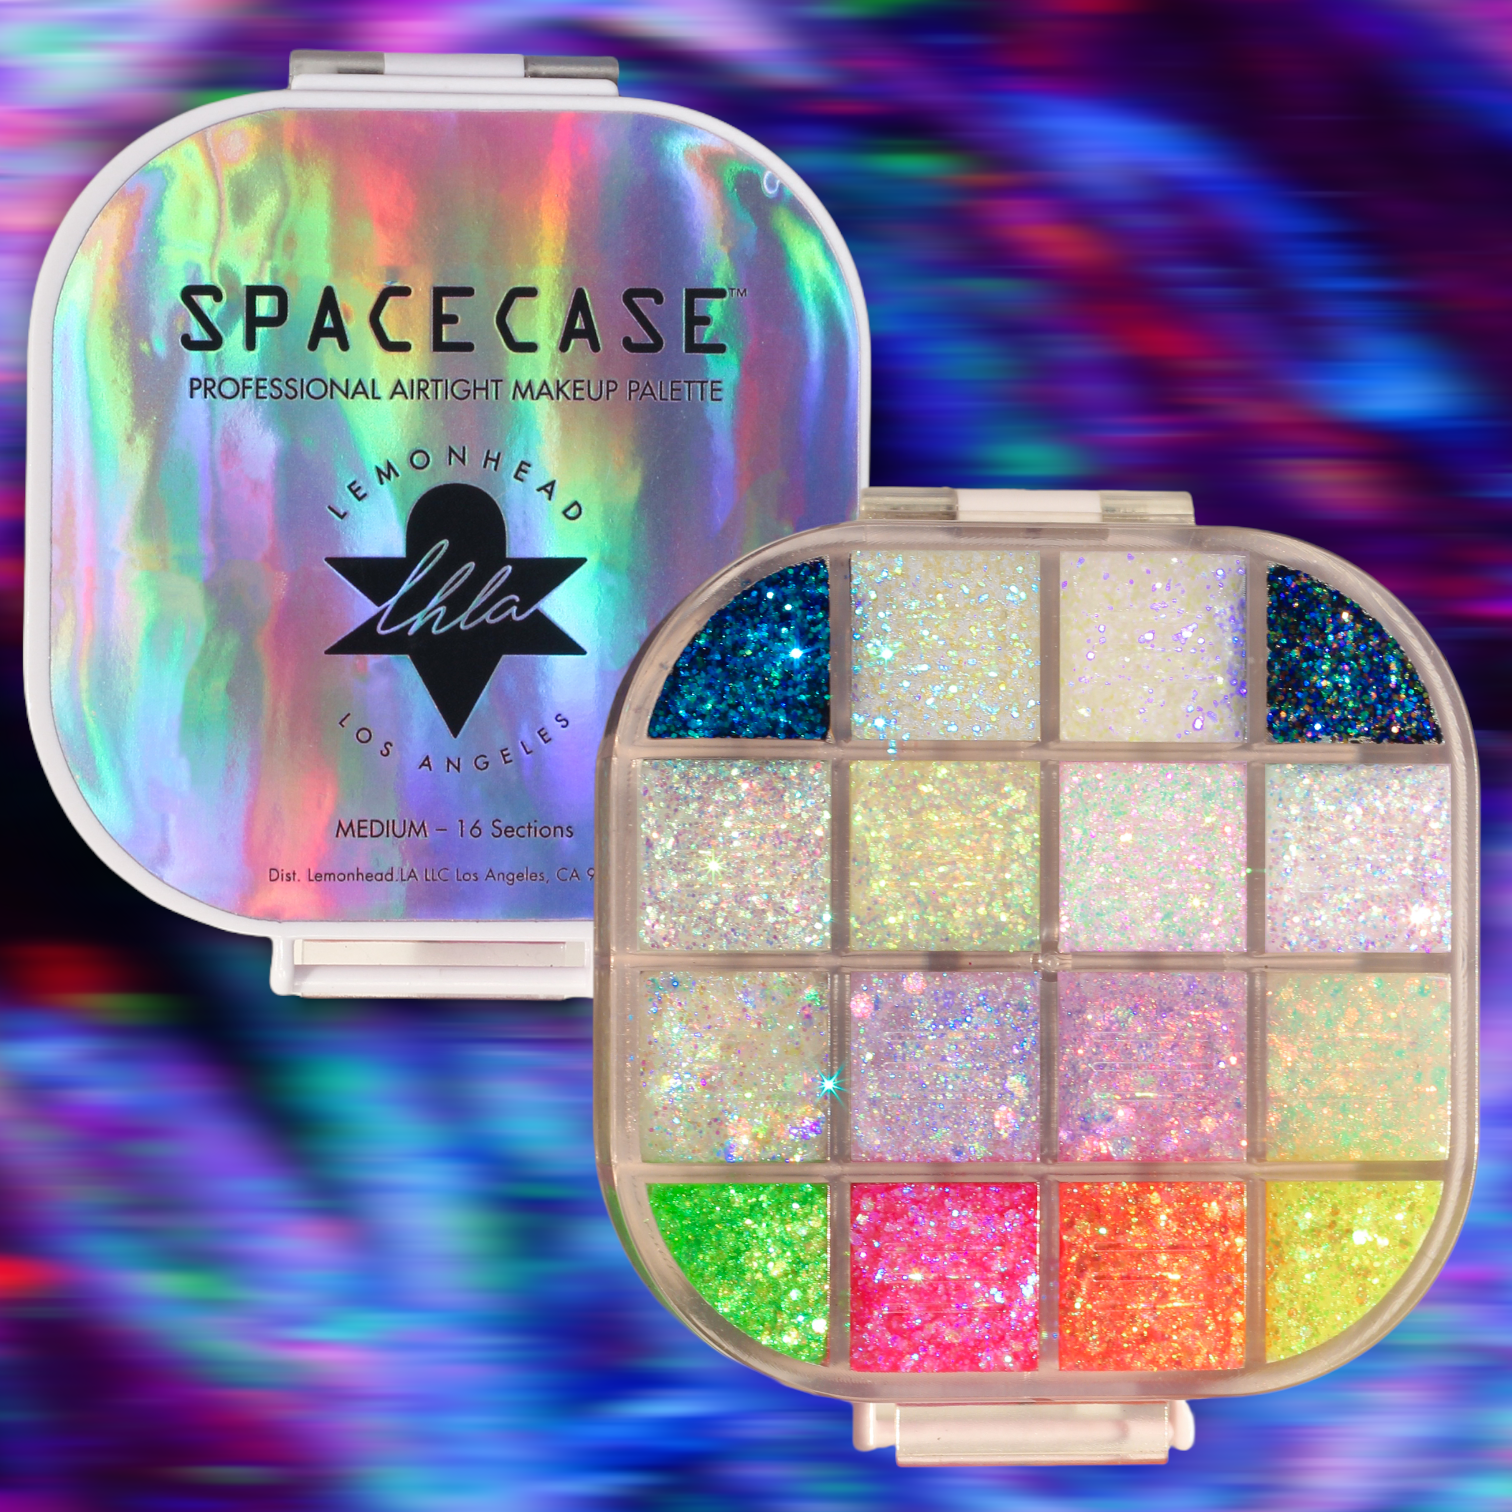 Spacecase® Illuminating Mini PRO-Palette